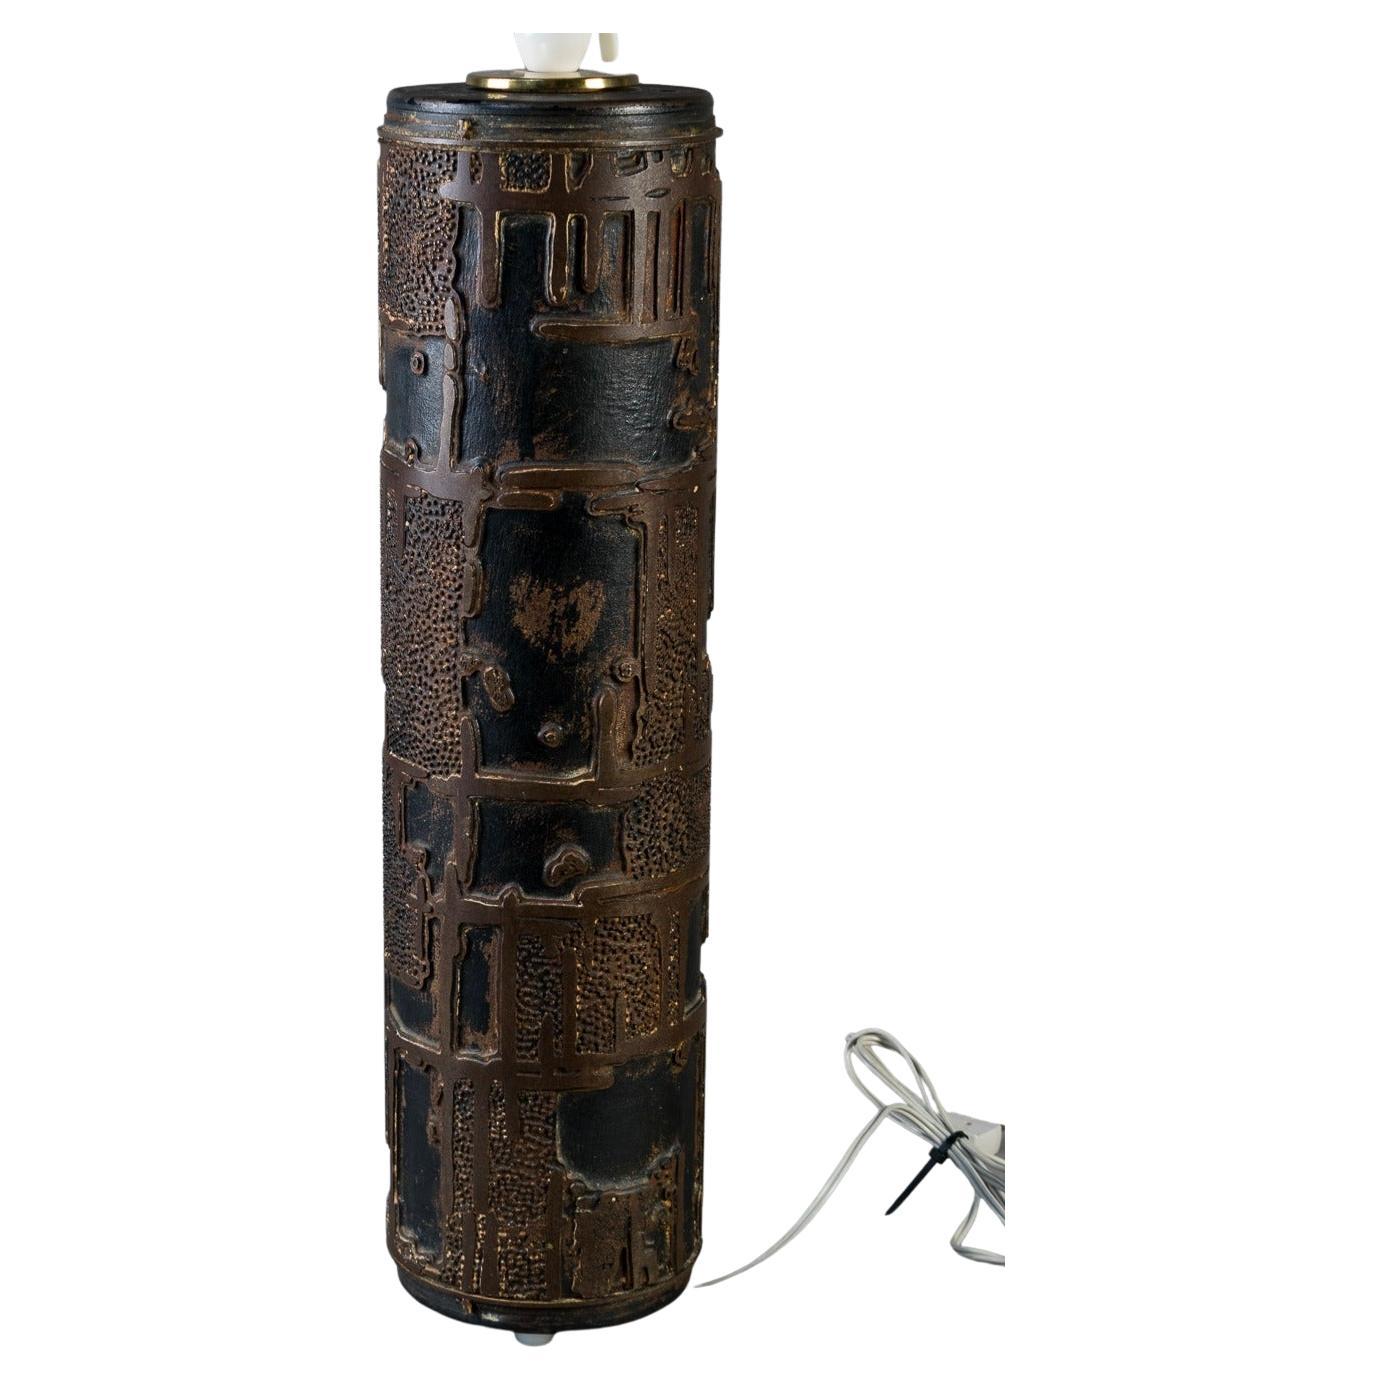 Lampe de table industrielle danoise, modifiée à partir d'un rouleau de tapisserie vintage en métal.

Un étonnant rouleau de papier peint vintage à grande échelle comme lampe, vers 1940. Forme cylindrique en métal lourd, décorée de motifs en laiton